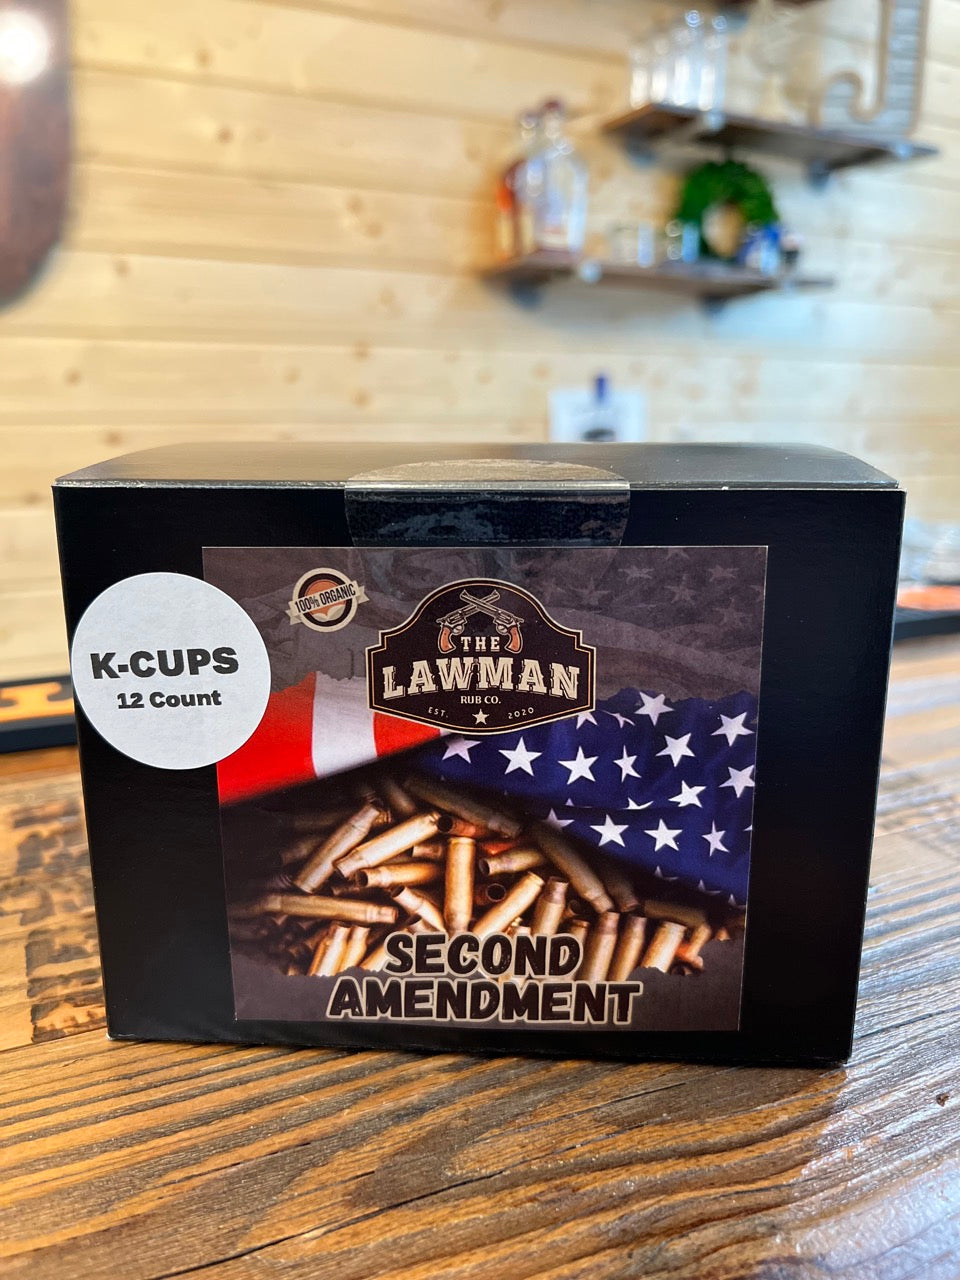 Second Amendment medium roast K-cup 12 count box